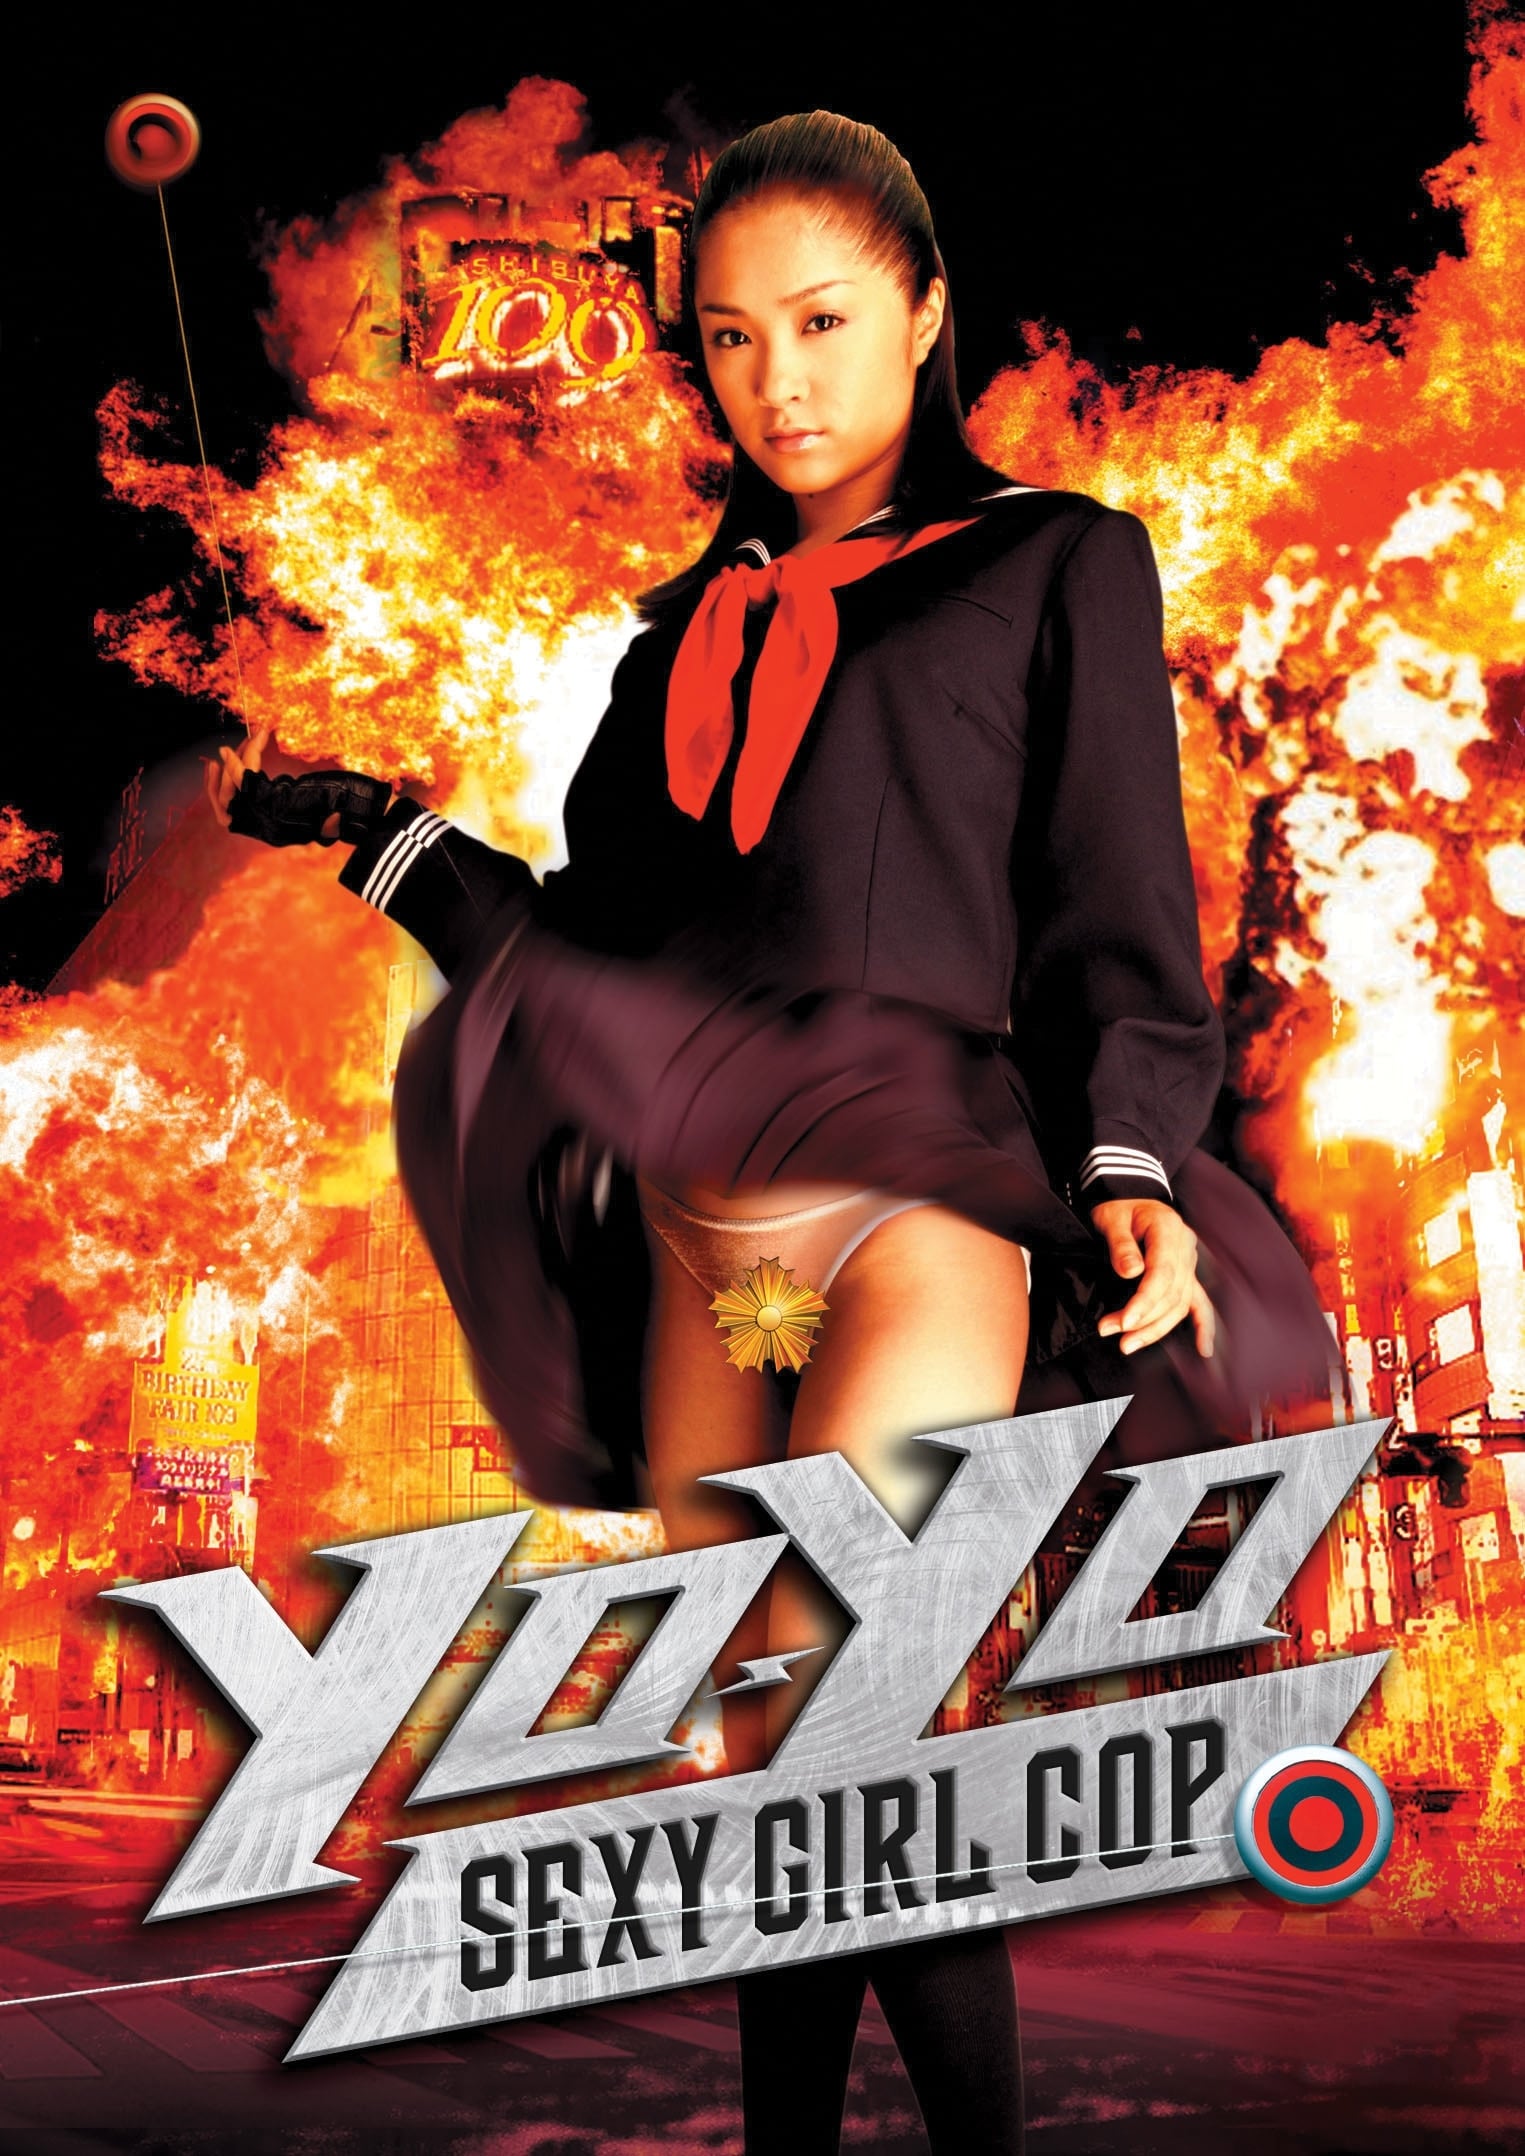 Yo-Yo Sexy Girl Cop